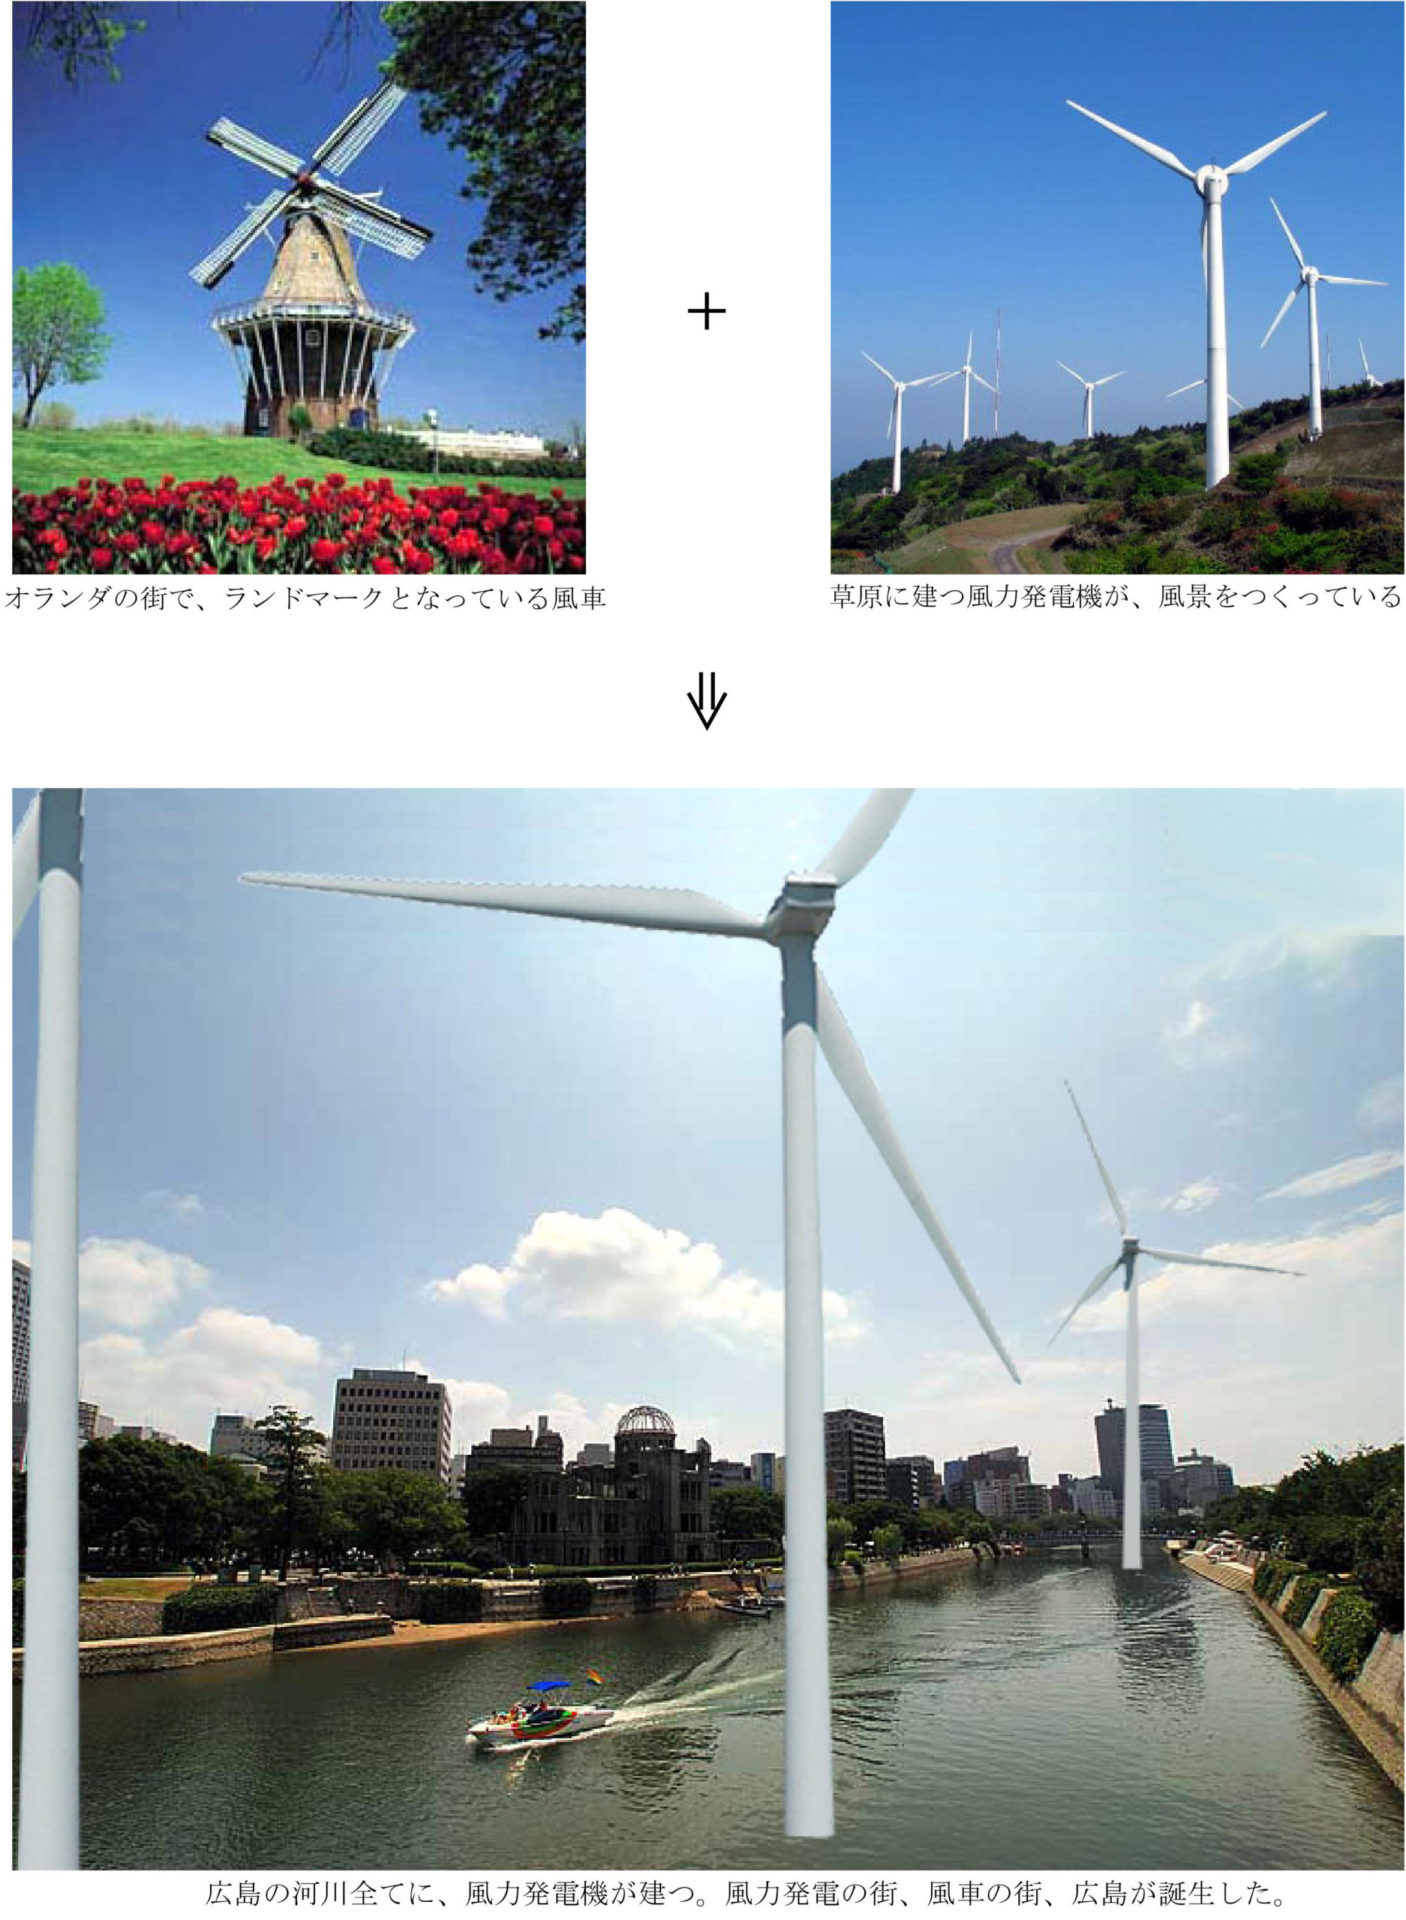 河川すべてに風力発電機を建て、新たなランドマークとする